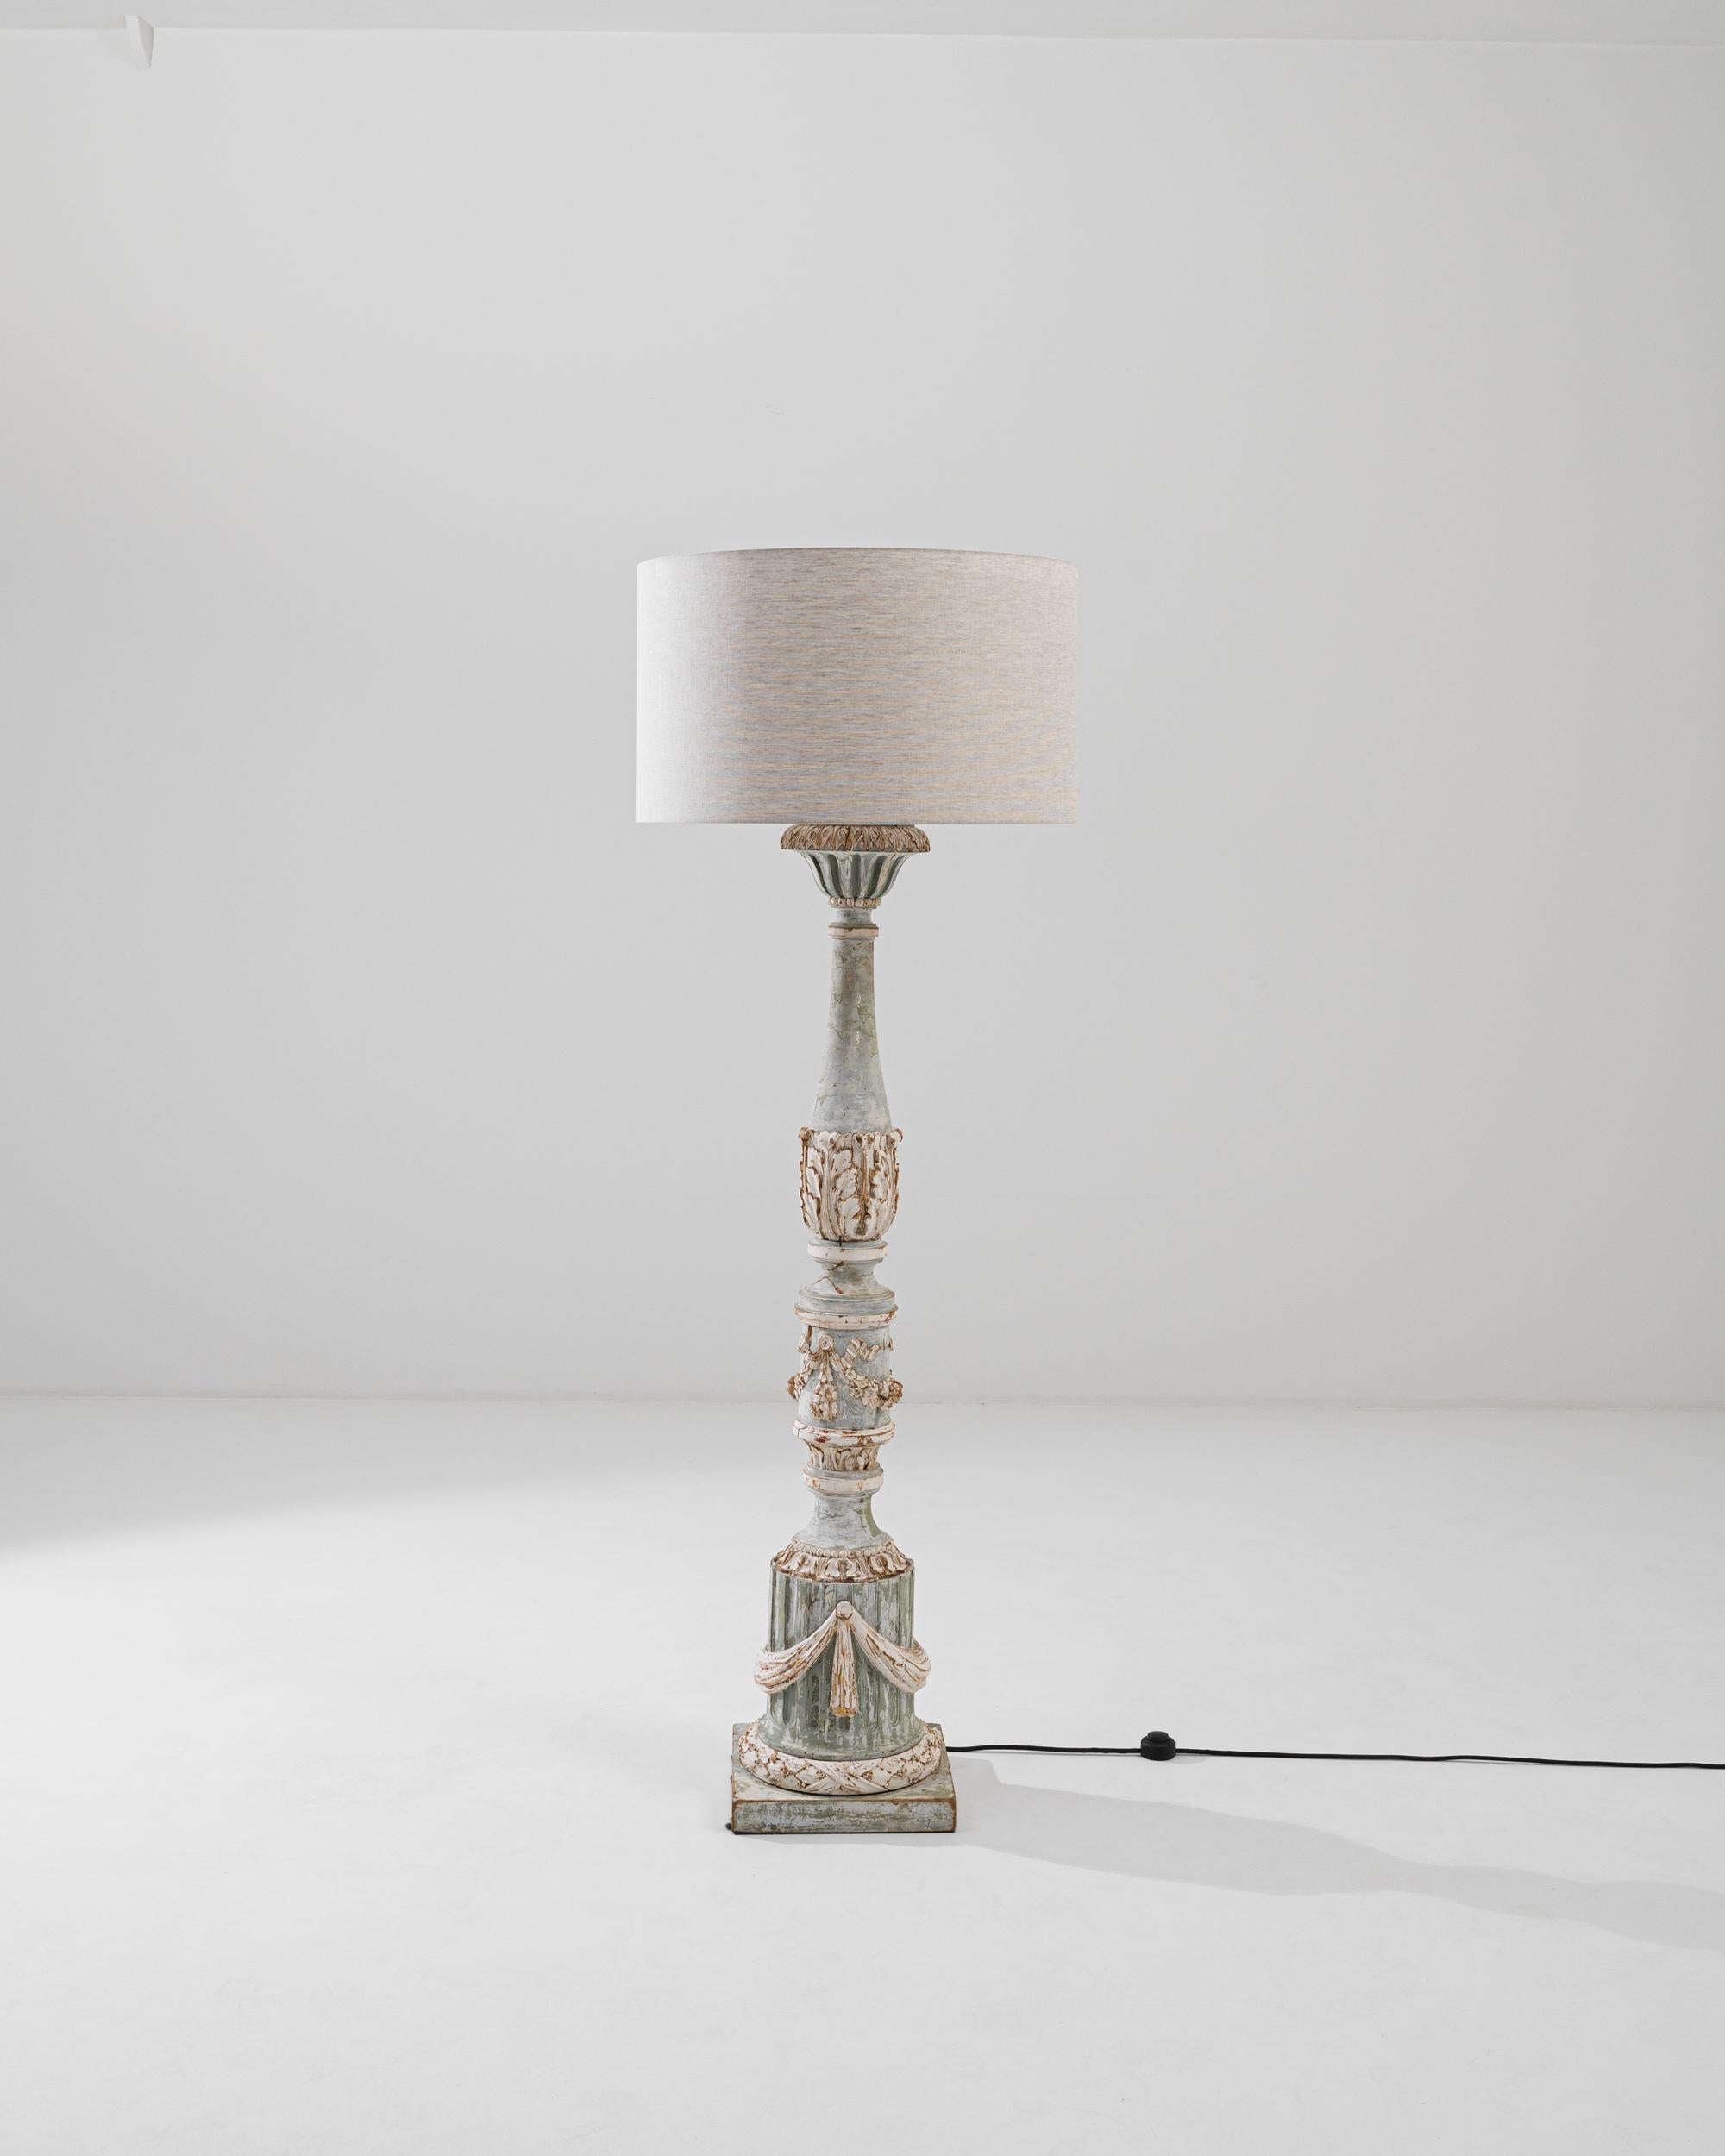 Délicat et orné, ce lampadaire en bois sculpté apporte un élément de fantaisie française à un intérieur. Réalisé au début du siècle, le design offre une interprétation élaborée des motifs néoclassiques. La colonne cannelée de la base est ornée d'une